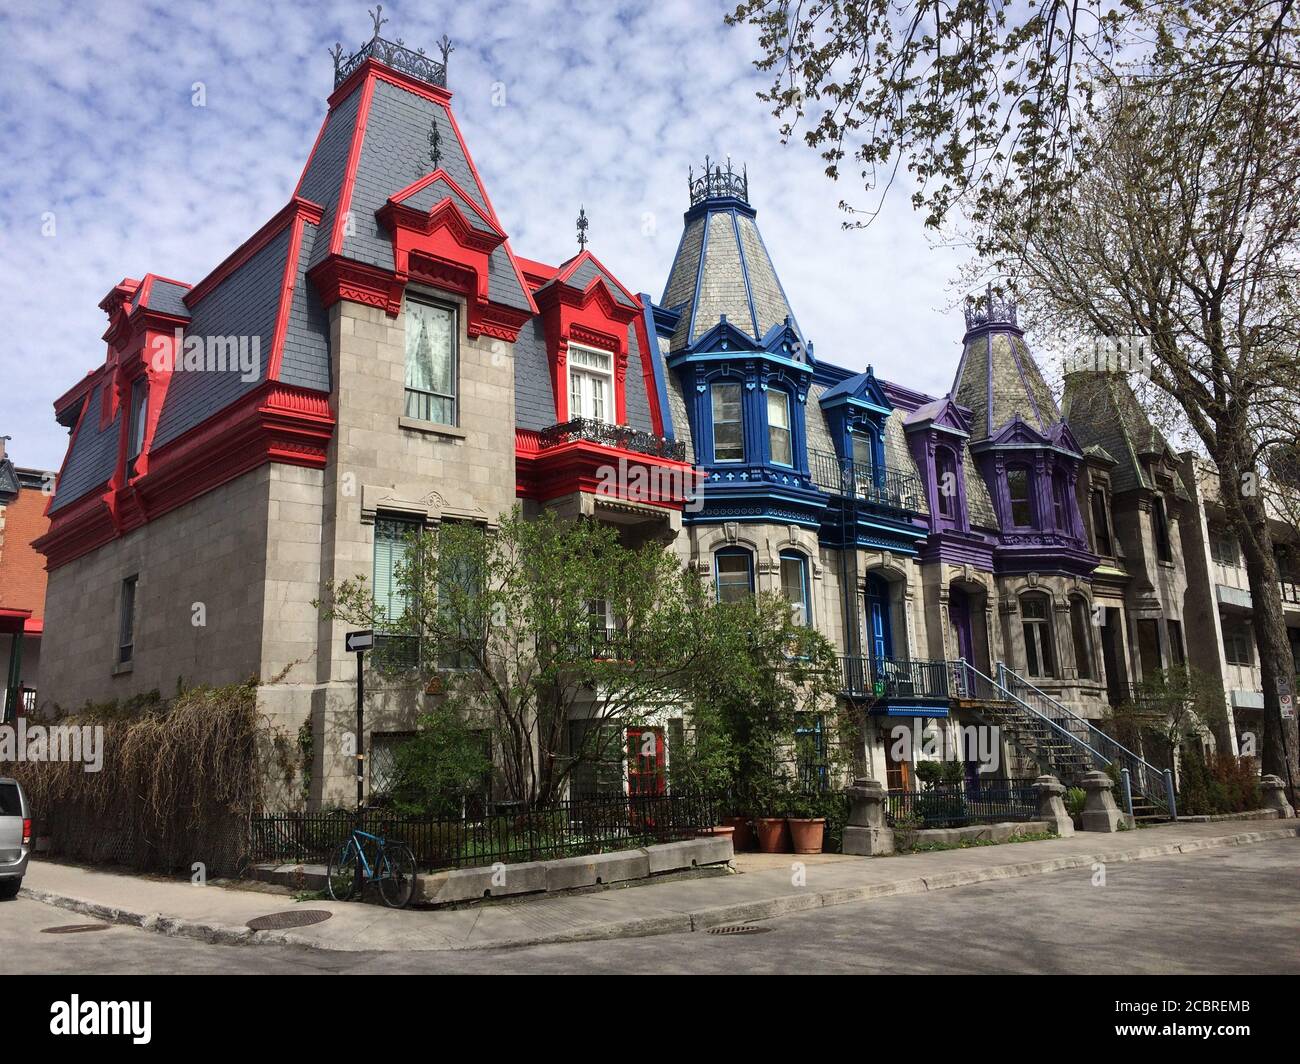 Maisons colorées de style victorien donnant sur la place Saint Louis. Montréal, Québec / Canada. Banque D'Images